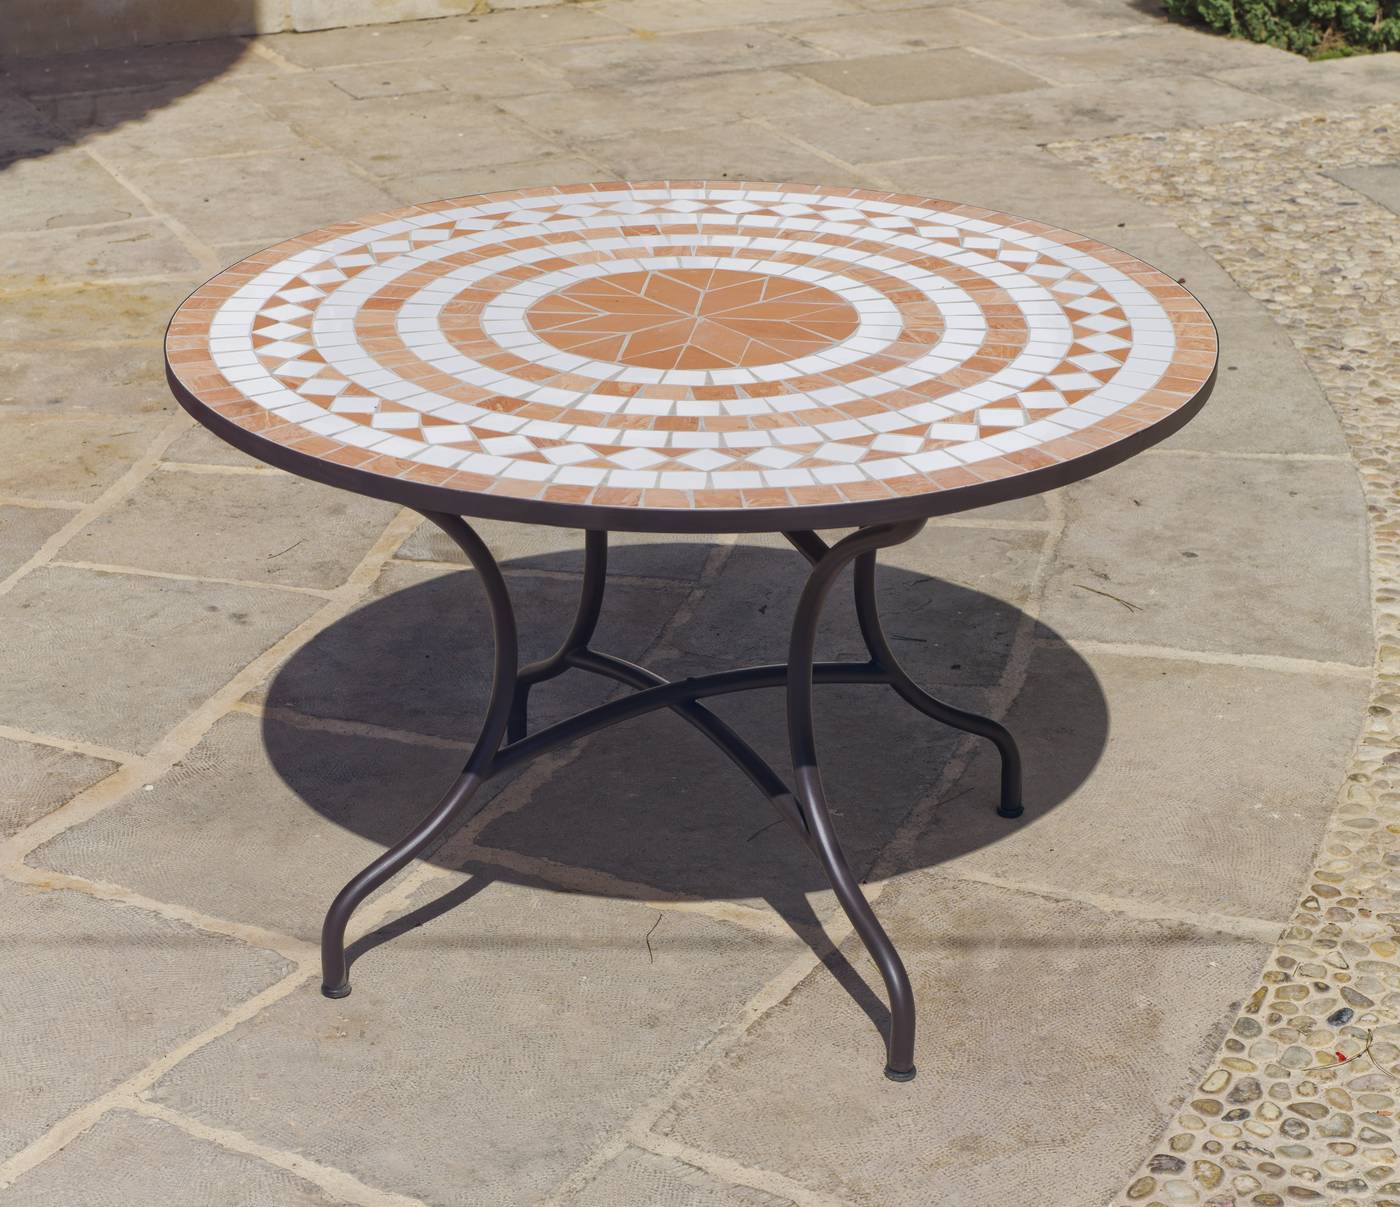 Set Mosaico Dogliani-Vigo 120-6 - Conjunto de forja color bronce: mesa redonda de acero forjado, con tablero mosaico de 120 cm. + 6 sillones con cojines